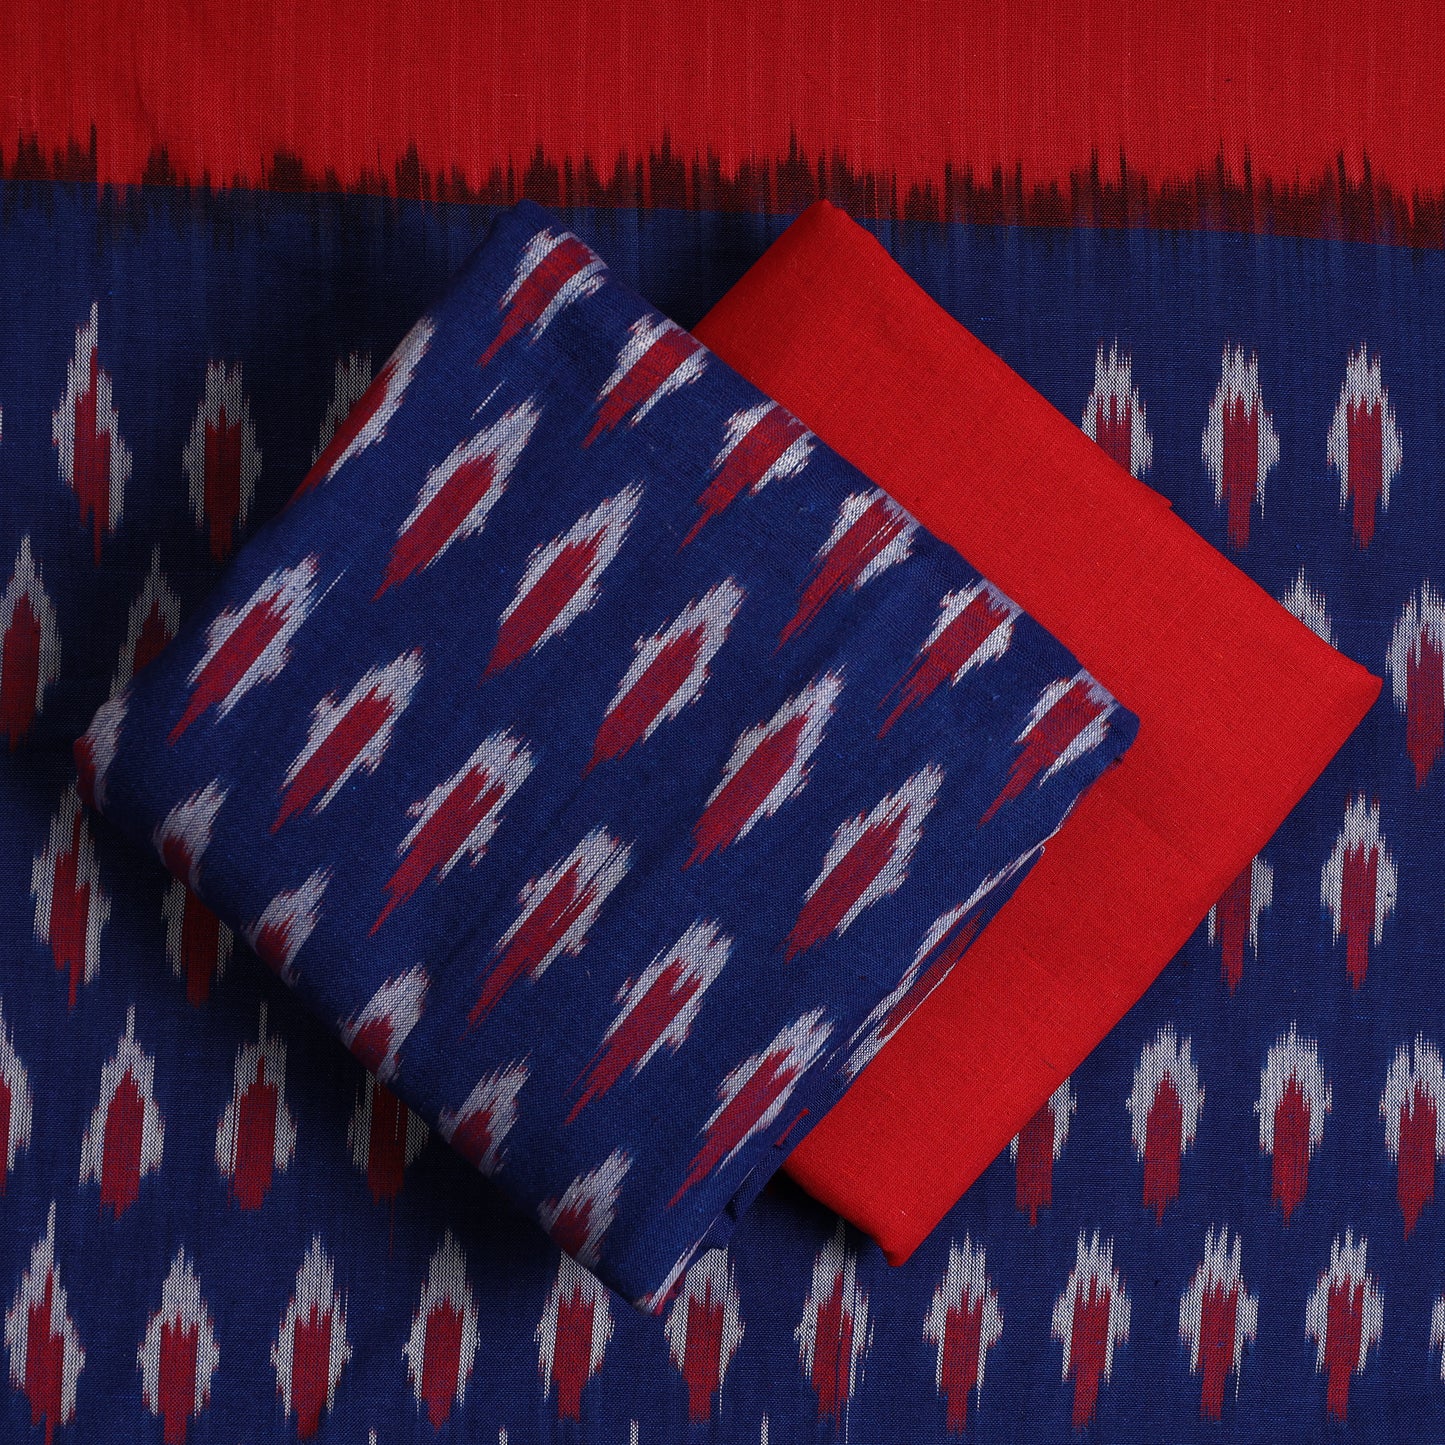 Blue - 3pc Pochampally Ikat Weave Handloom Cotton Suit Material Set 13